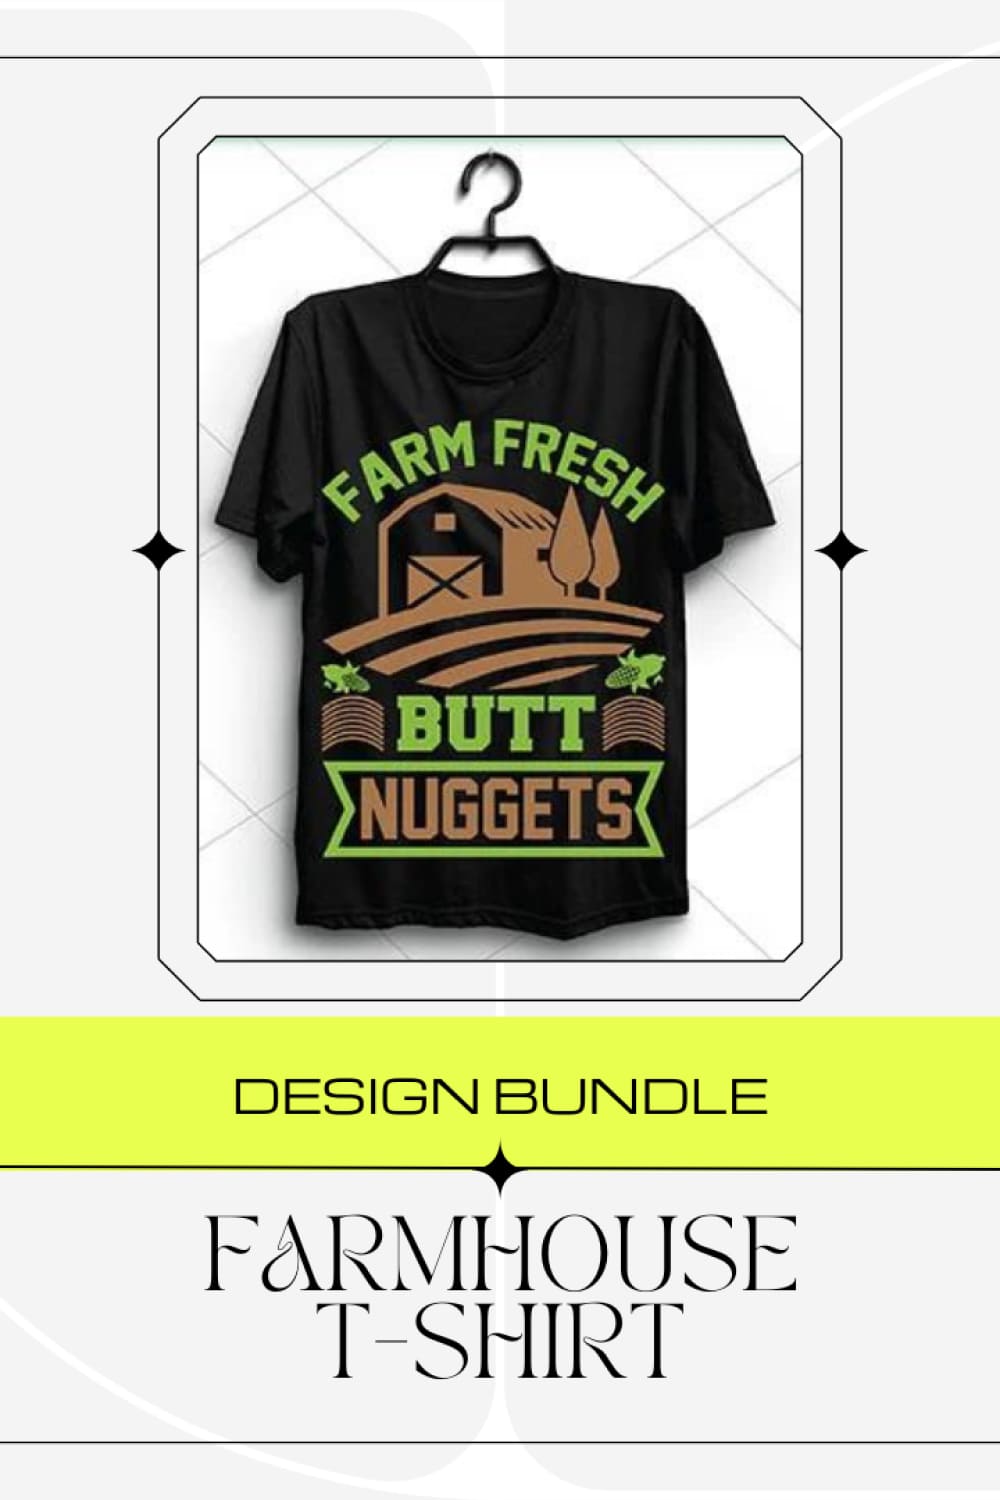 Farmhouse T-Shirt Design Bundle - Pinterest.